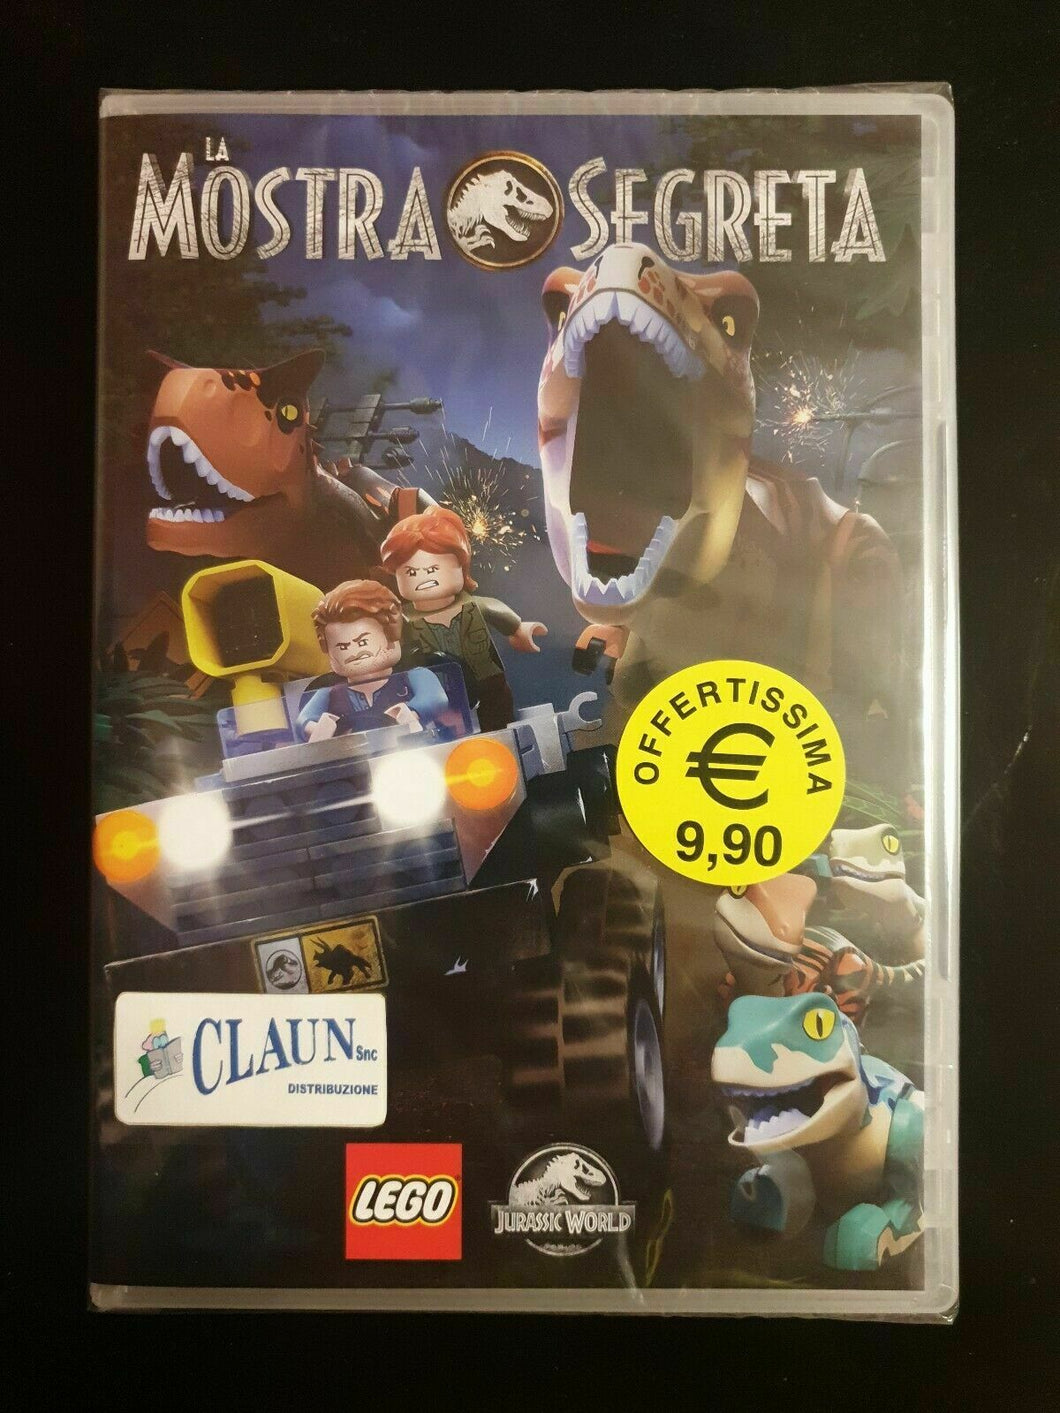 Lego Jurassic World - La Mostra Segreta DVD Nuovo